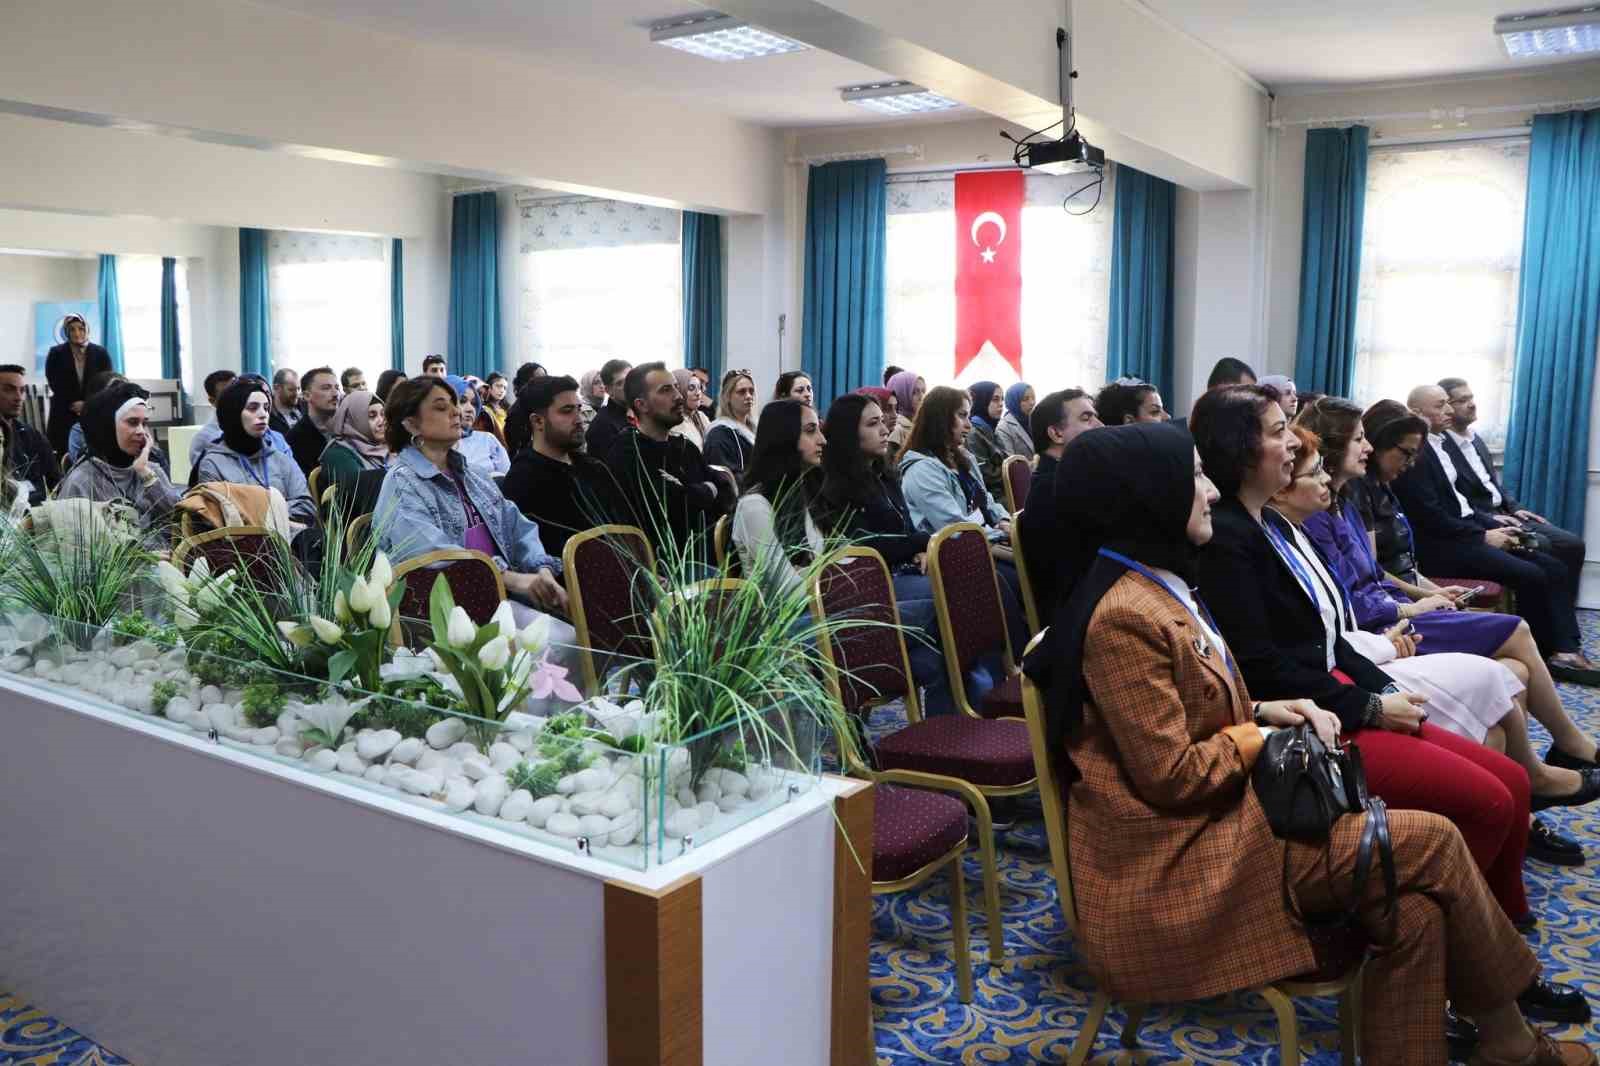 Kütahya’da sağlık personeline ilk Yenidoğan Canlandırma Programı eğitimi